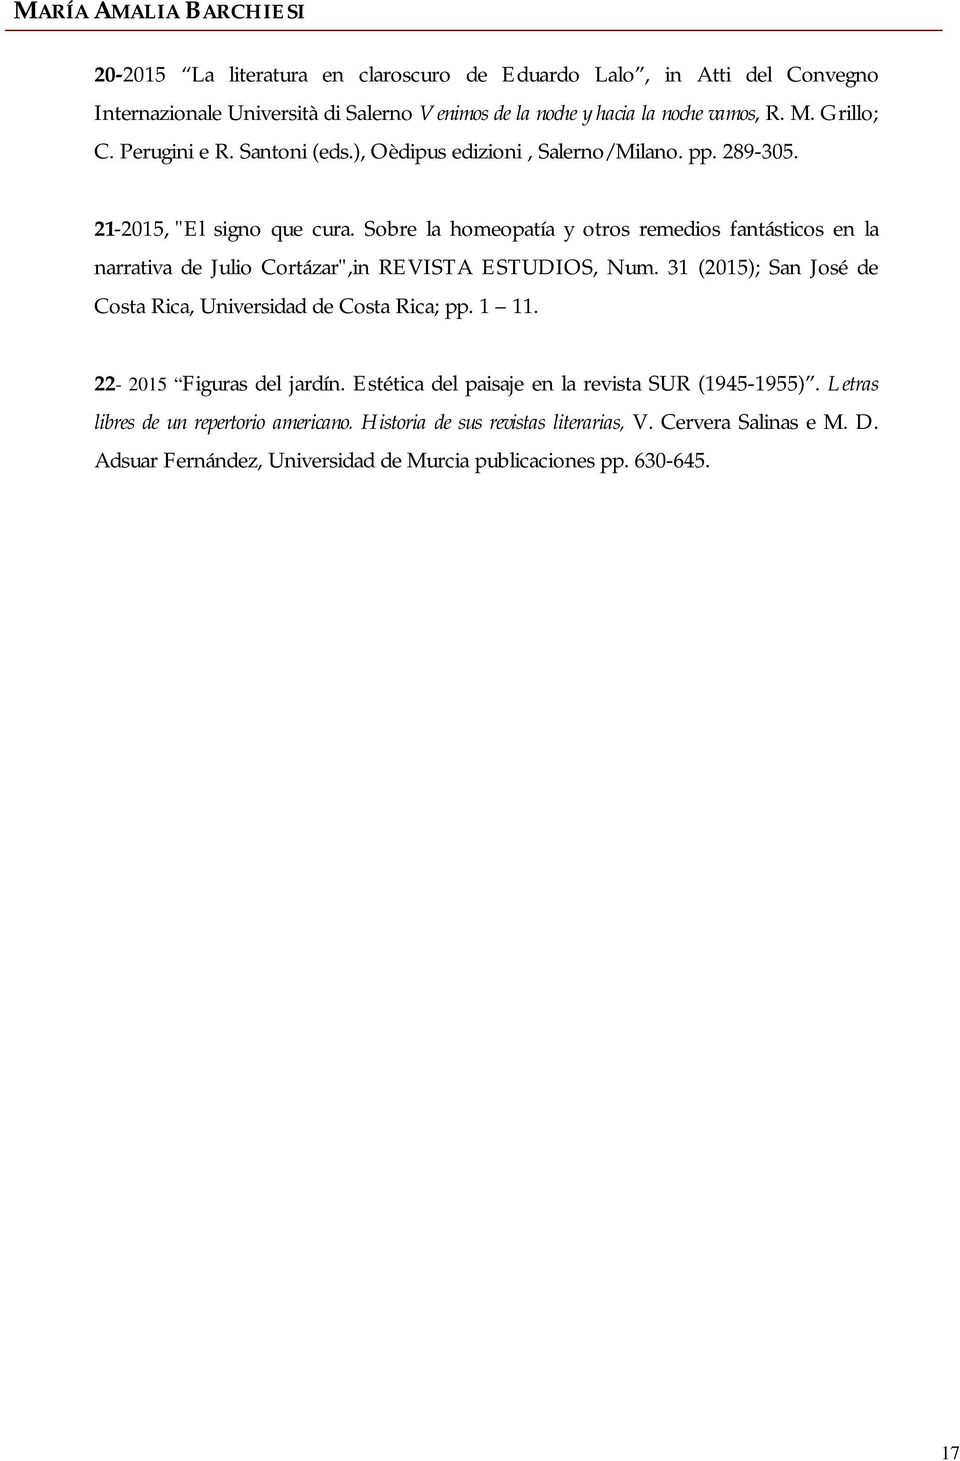 Sobre la homeopatía y otros remedios fantásticos en la narrativa de Julio Cortázar",in REVISTA ESTUDIOS, Num. 31 (2015); San José de Costa Rica, Universidad de Costa Rica; pp.